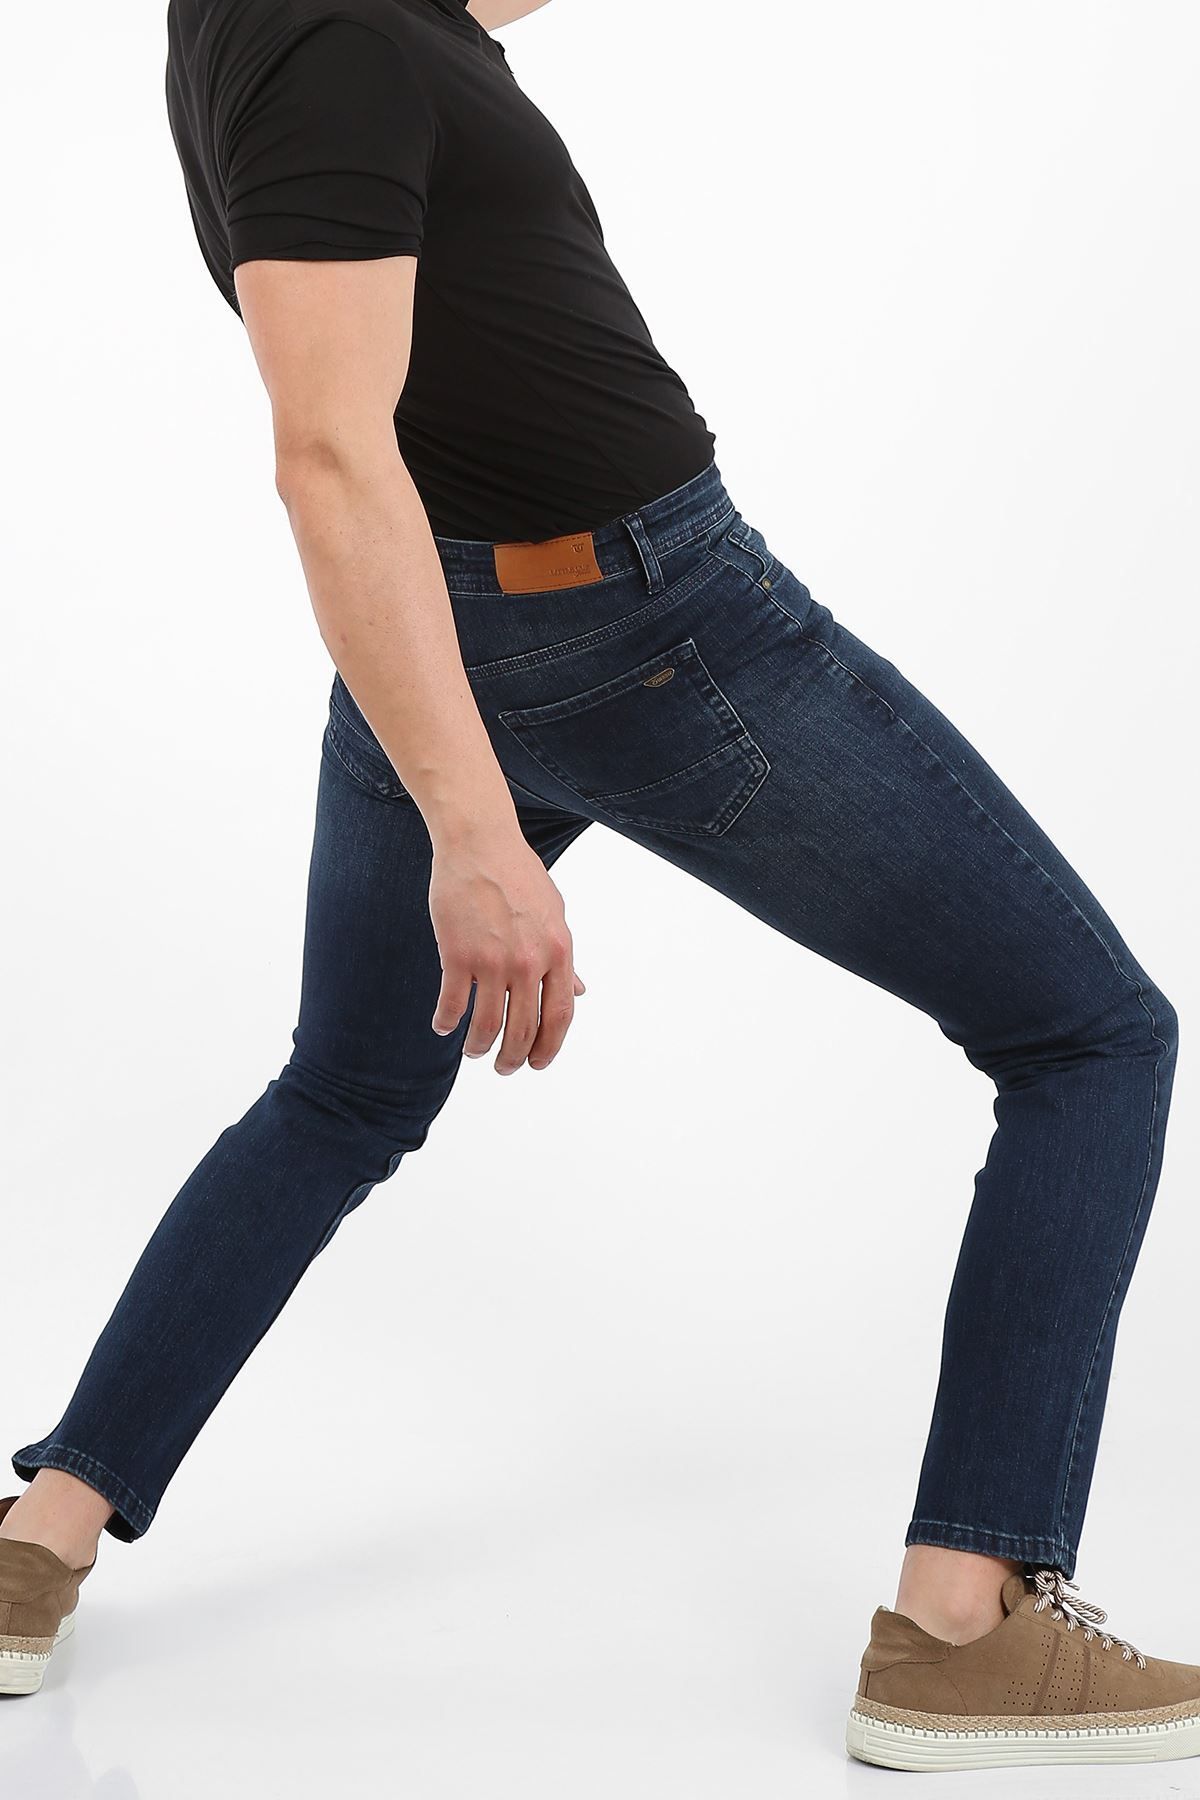 LTC Jeans Koyu Mavi Yıpratma Slim Fit Fermuarlı Erkek Jeans Pantolon-jonas